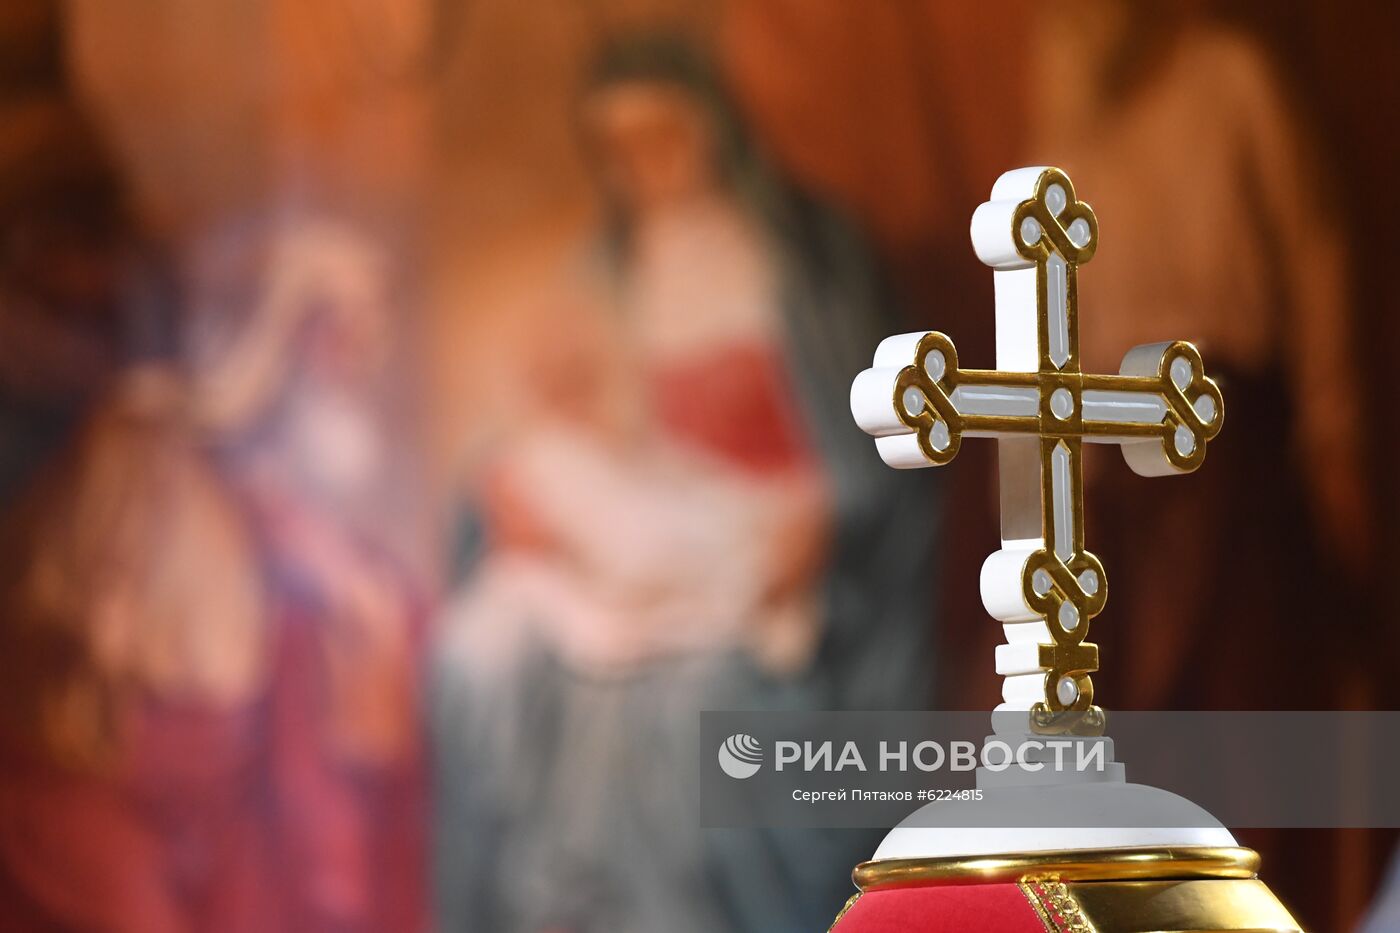 Пасхальное богослужение в храме Христа Спасителя в Москве 